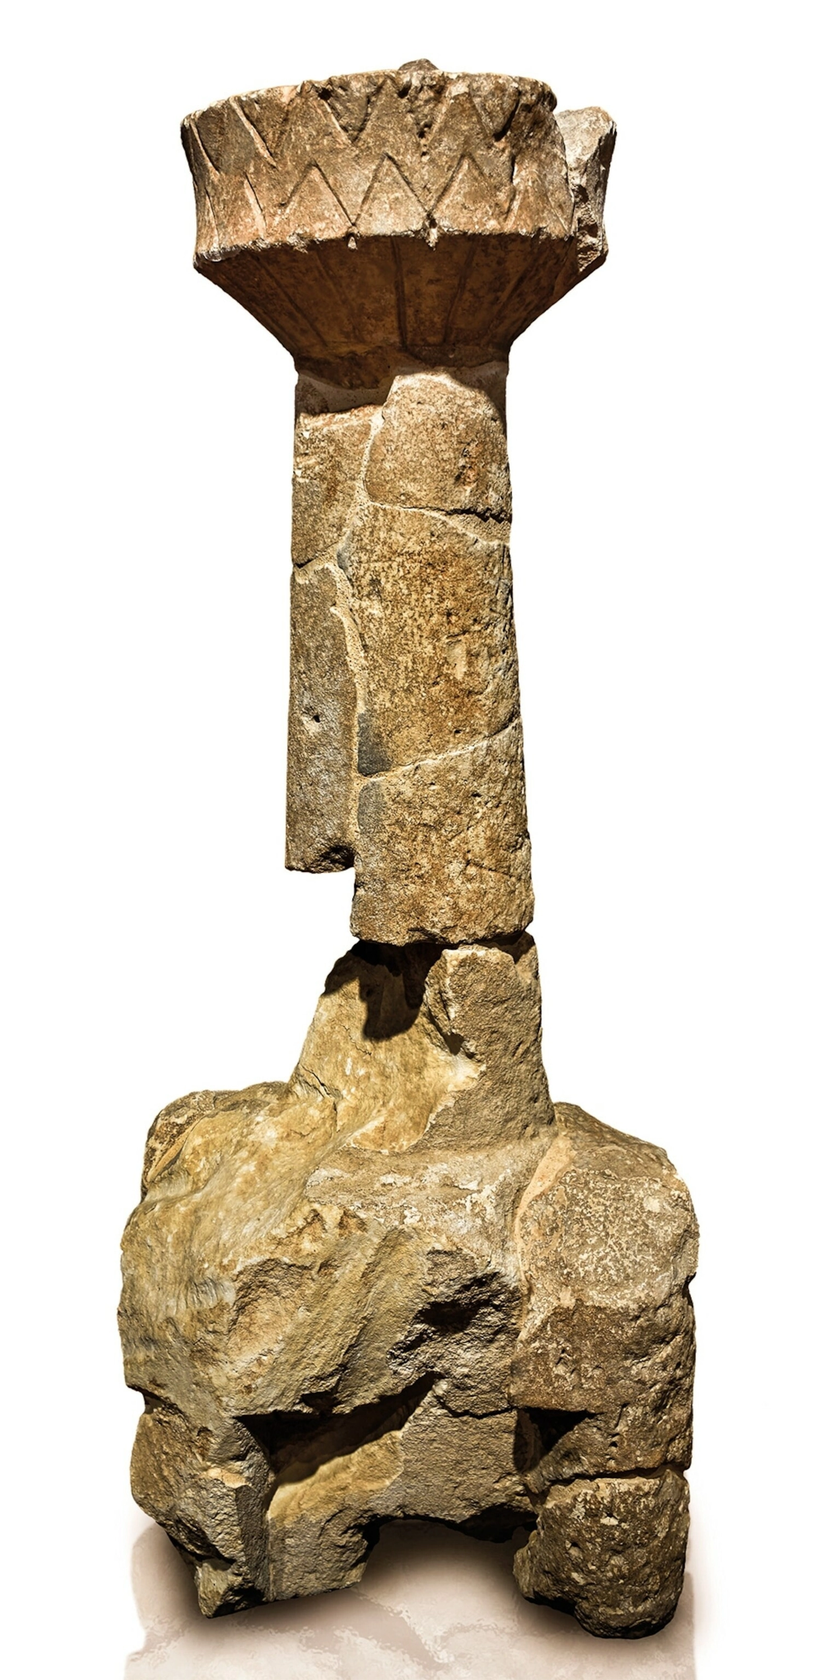 Dev heykeller arasında, bir Nuraghe modelinden yapılma bu merkezi kule gibi, Mont'e Prama'da minyatür nuraghi modelleri de bulundu.